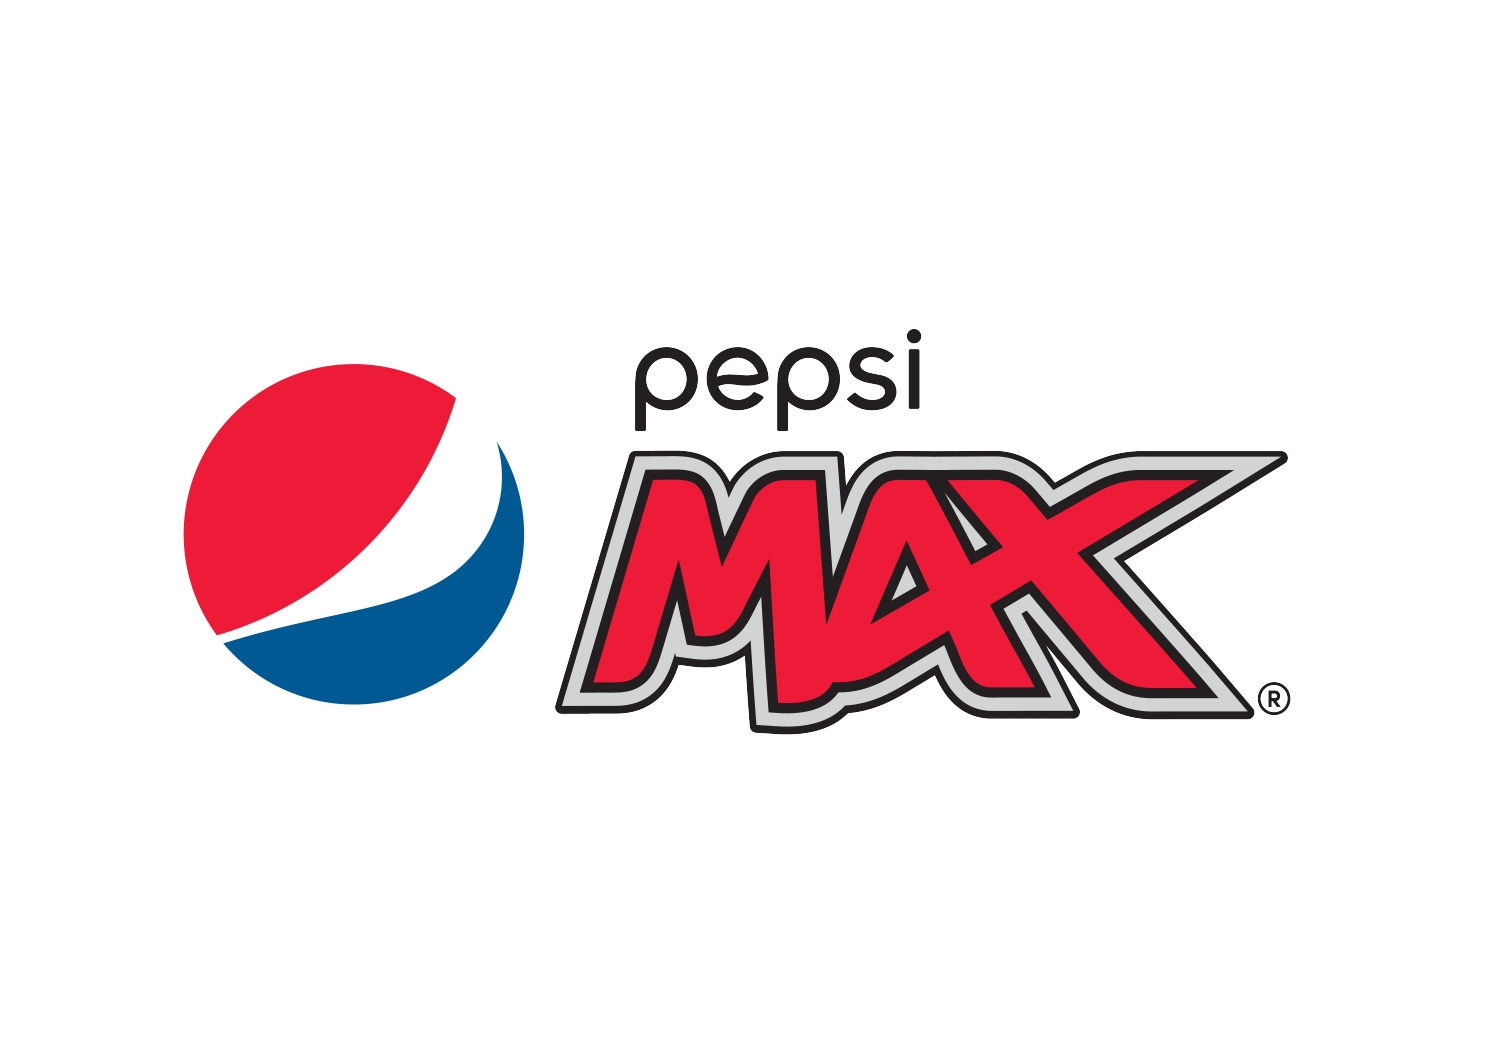 Pepsi Max.jpg